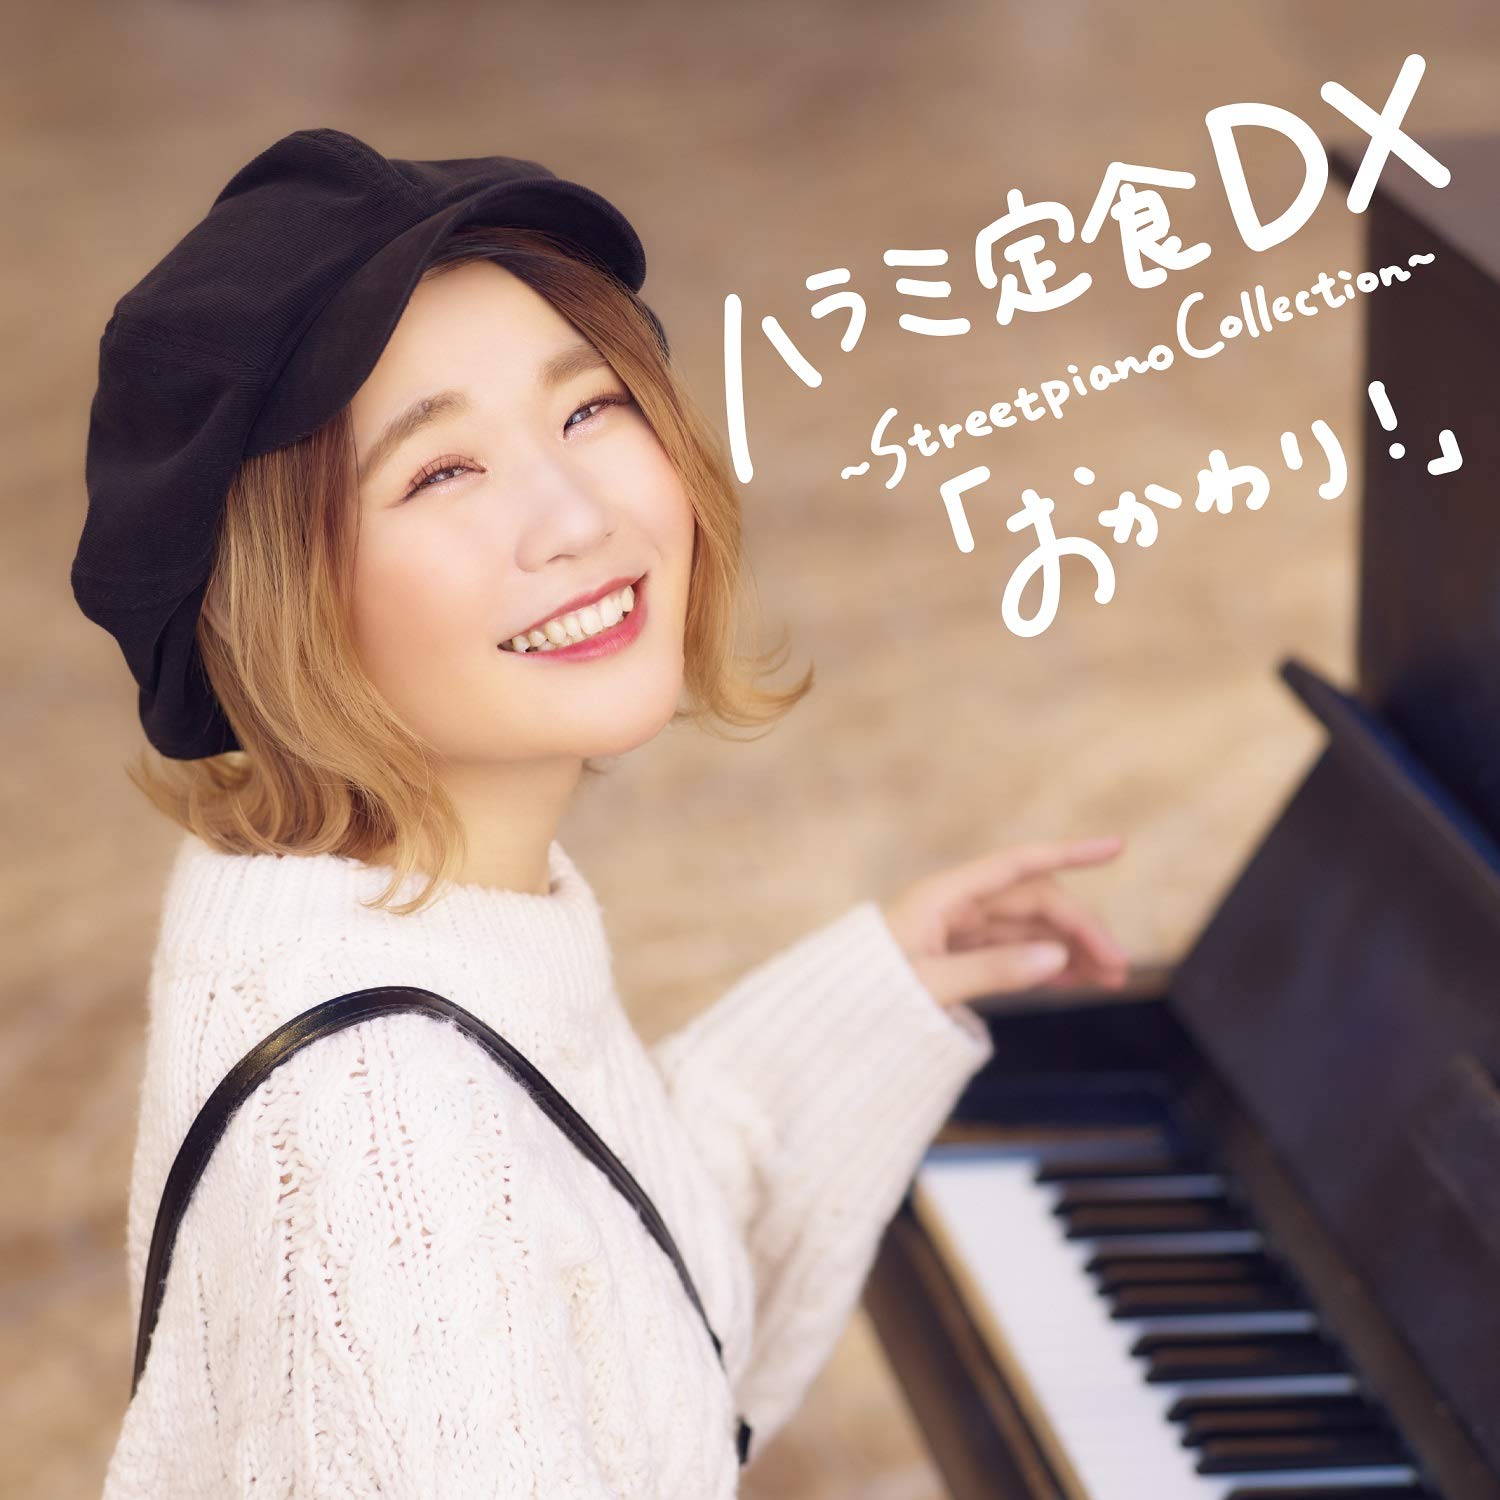 ハラミ定食 DX ~Streetpiano Collection~「おかわり! 」(CD+DVD)